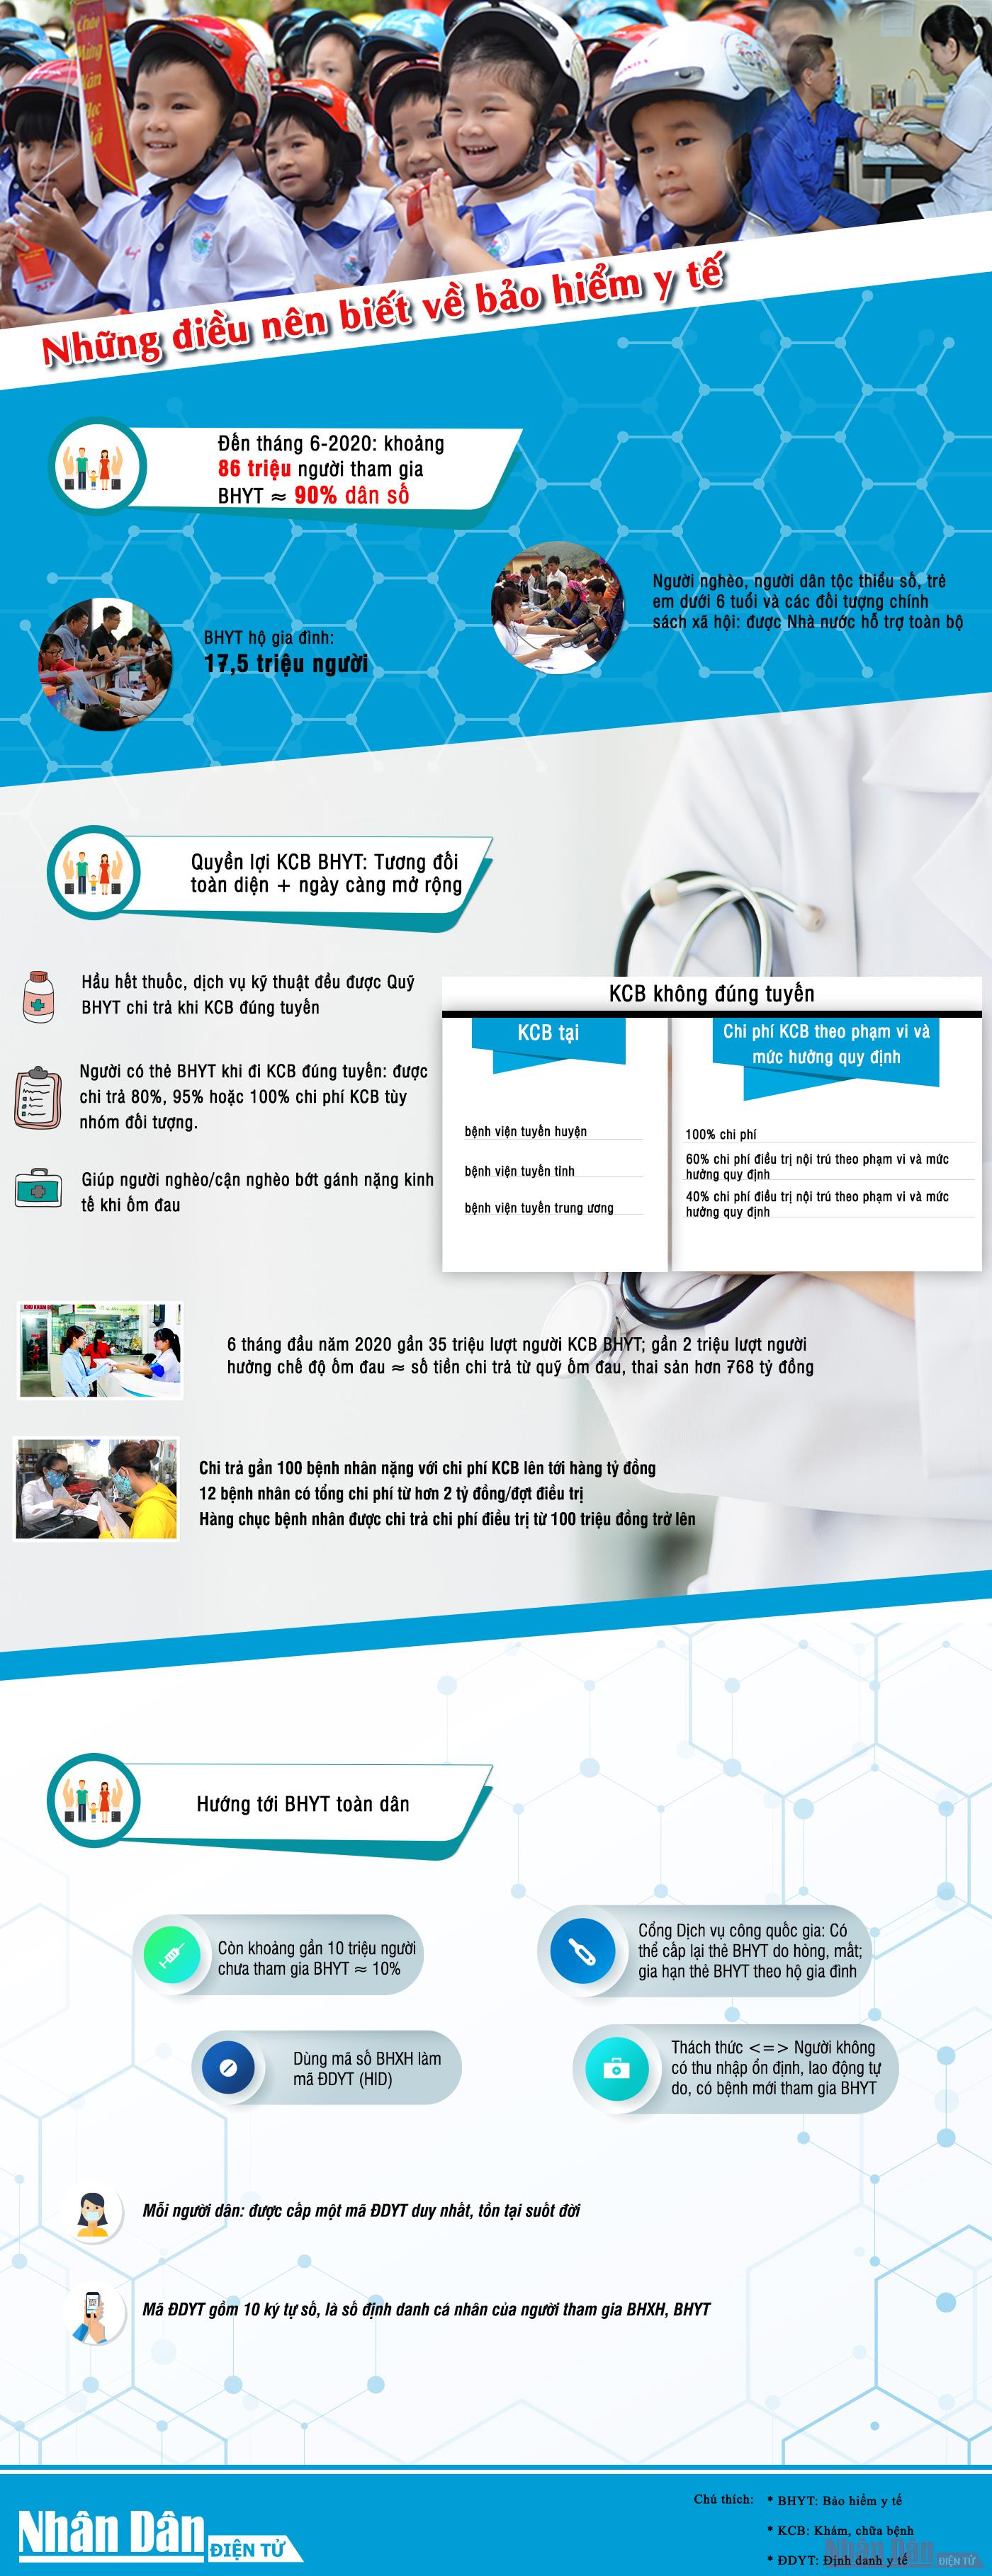 [Infographic] Những điều nên biết về bảo hiểm y tế - Ảnh 1